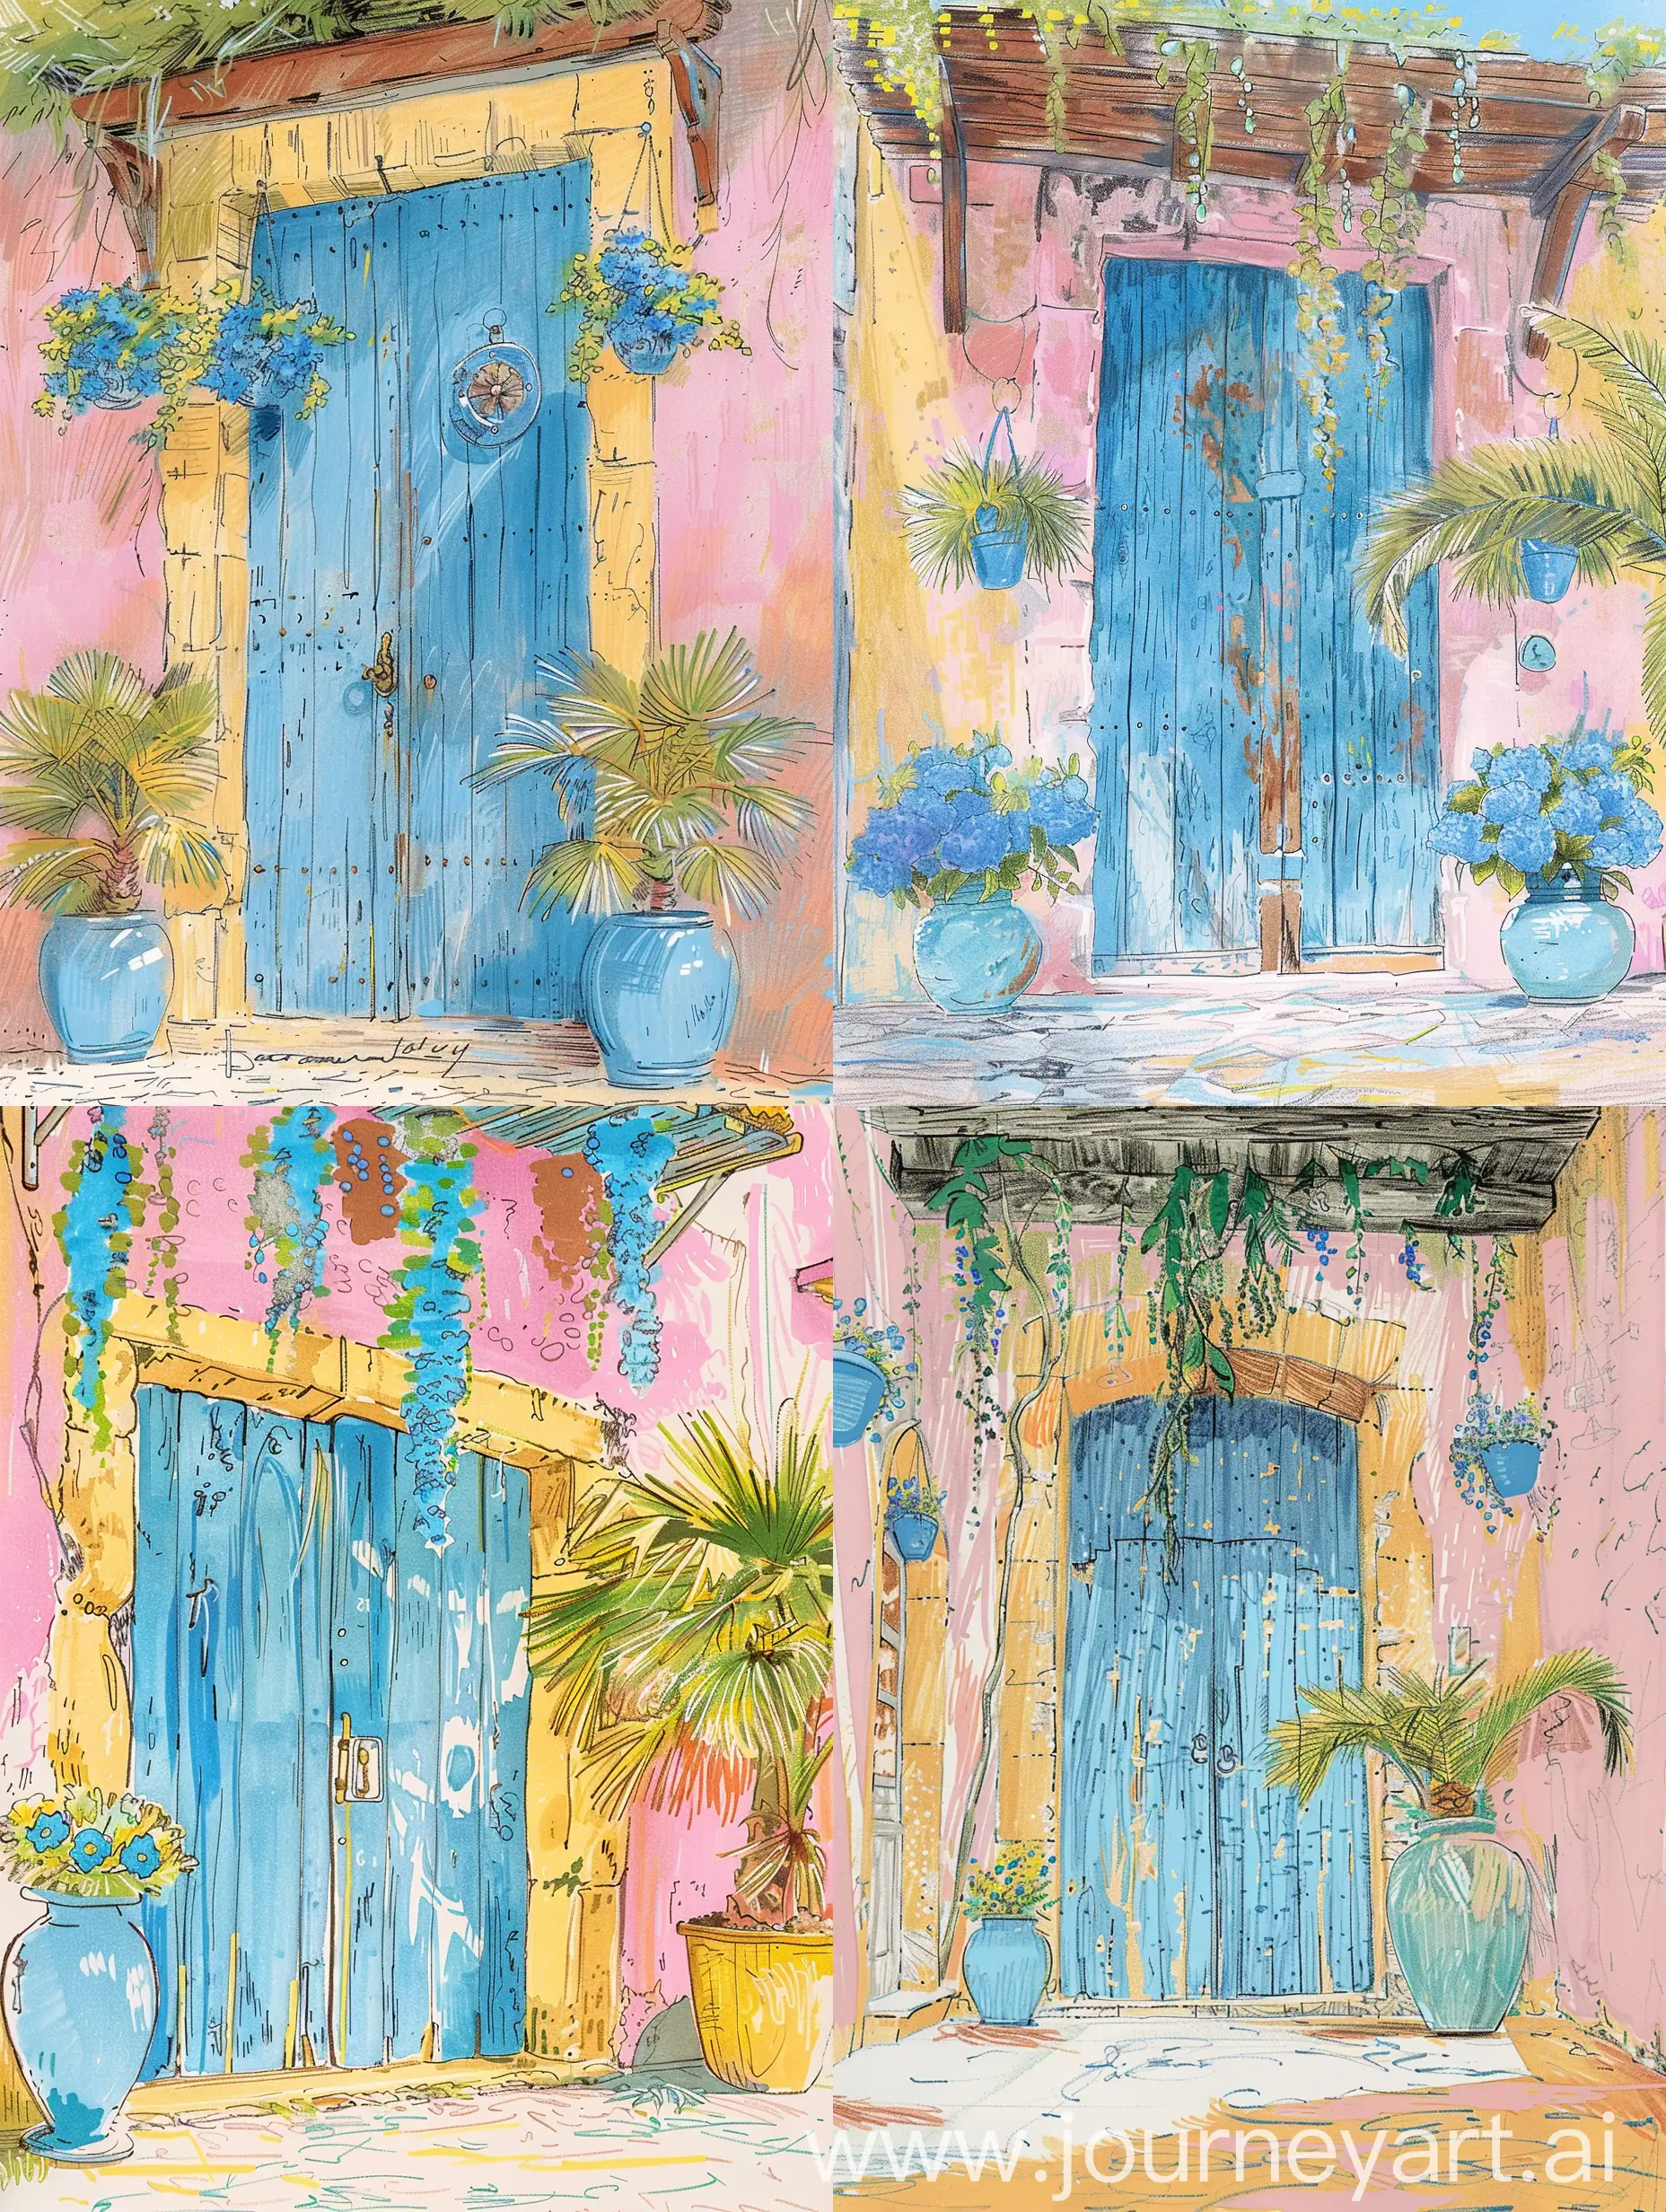 Скетч маркерами, красивая пыльная синяя деревянная дверь в живописных розовых оттенках, видны мазки маркером, след от маркера, подвешенные голубые цветы в вазонах,  пыльная пальма в горшке стоит на мостовой у входа, скетч маркерами, Старая Европа, Высокая детализация, гипердетально, жëлтый, пастельный амарантовый, красная охра, зеленый, салатовый, жëлтая охра, светло-бежевый и пыльный бирюзовый оттенок, блики на счету прорисованы белым мелом, живописно, много оттенков, лëгкий набросок, быстрые зарисовки, пленерные зарисовки маркером в альбоме